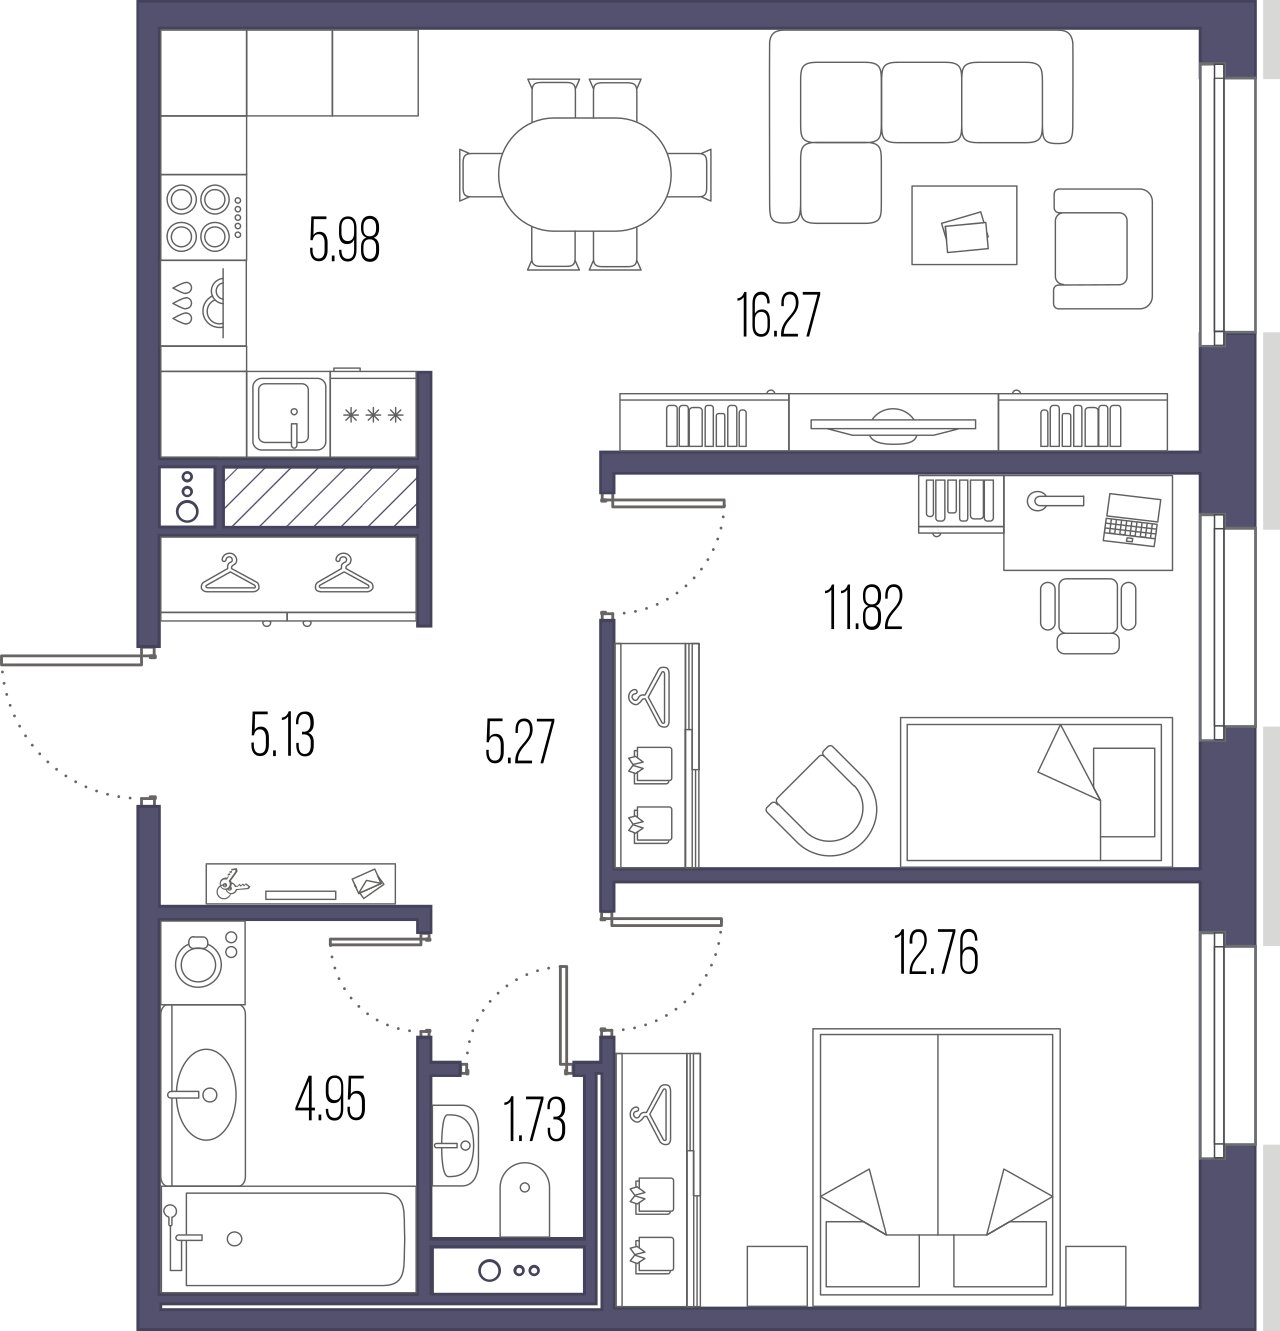 2-комнатная квартира  №35 в Svetlana Park: 63.91 м², этаж 6 - купить в Санкт-Петербурге